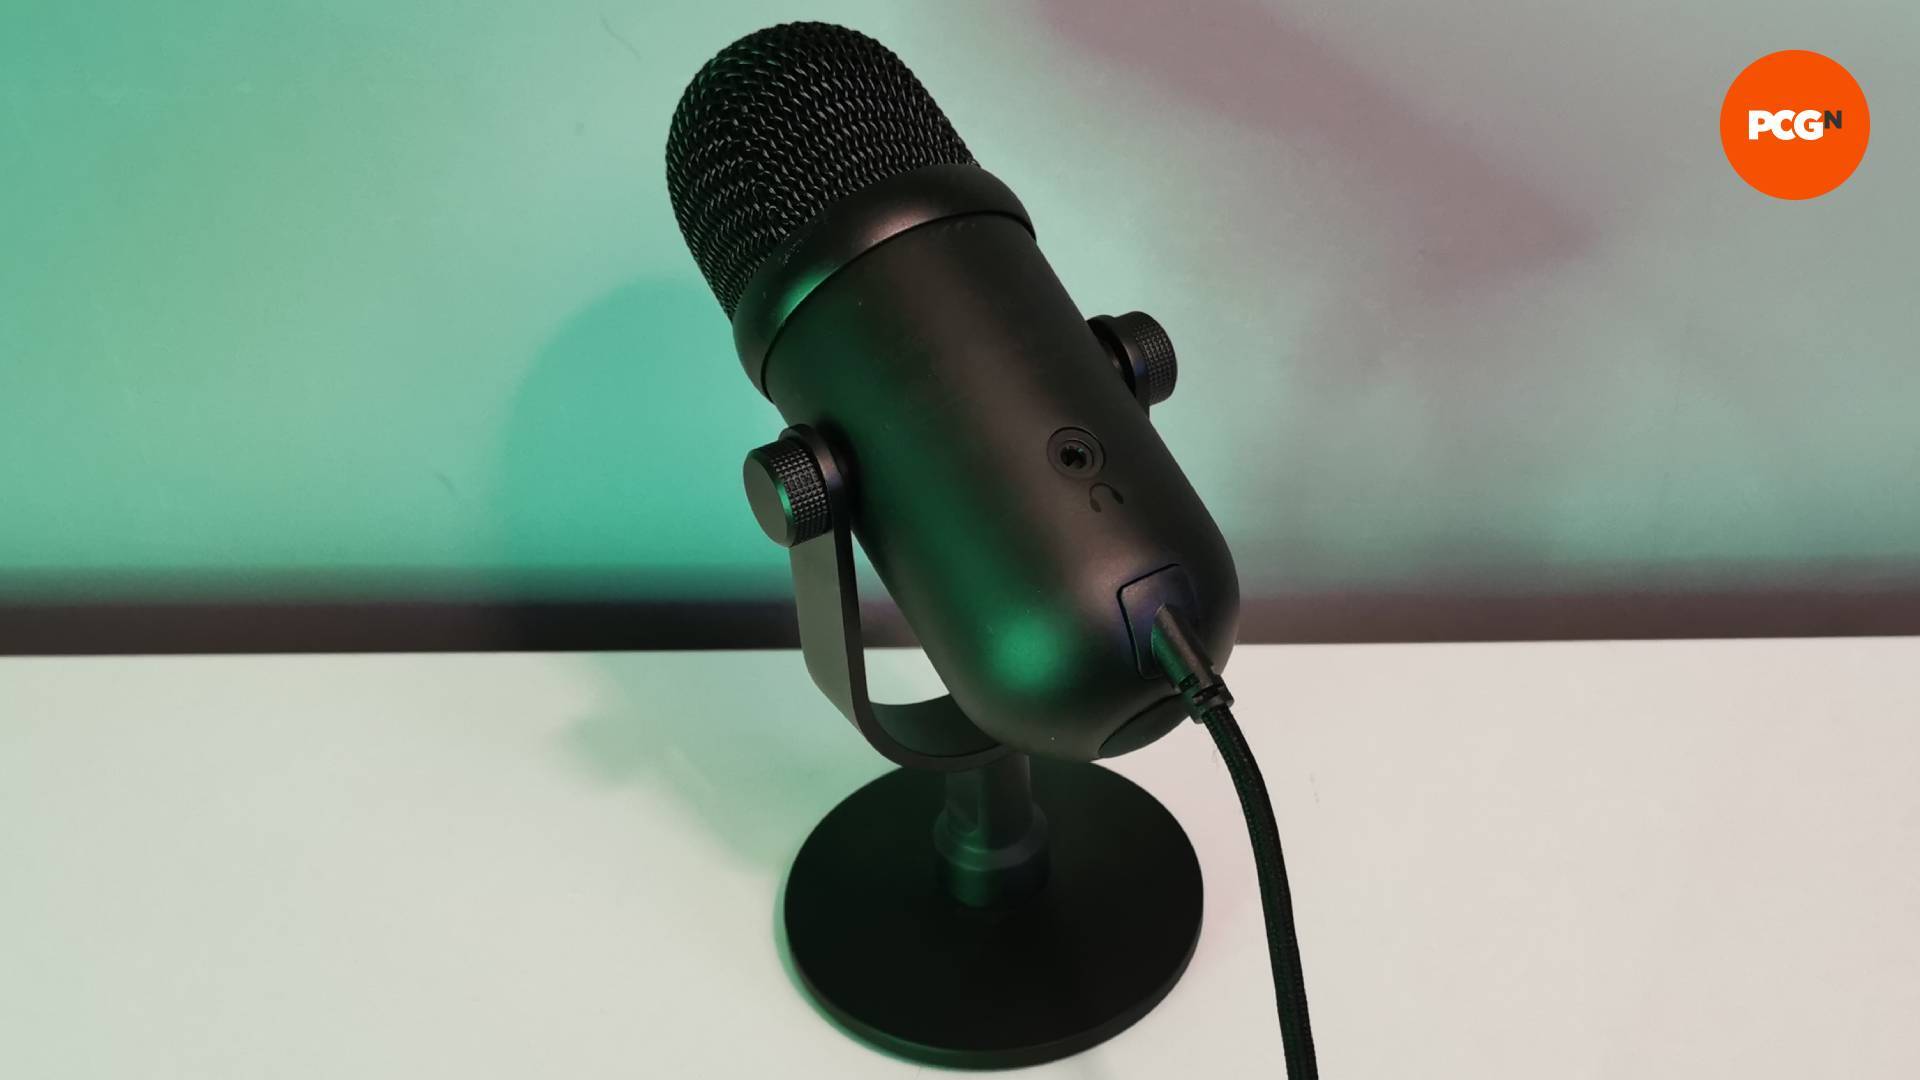 The Razer Seiren V2 Pro microphone on a white table